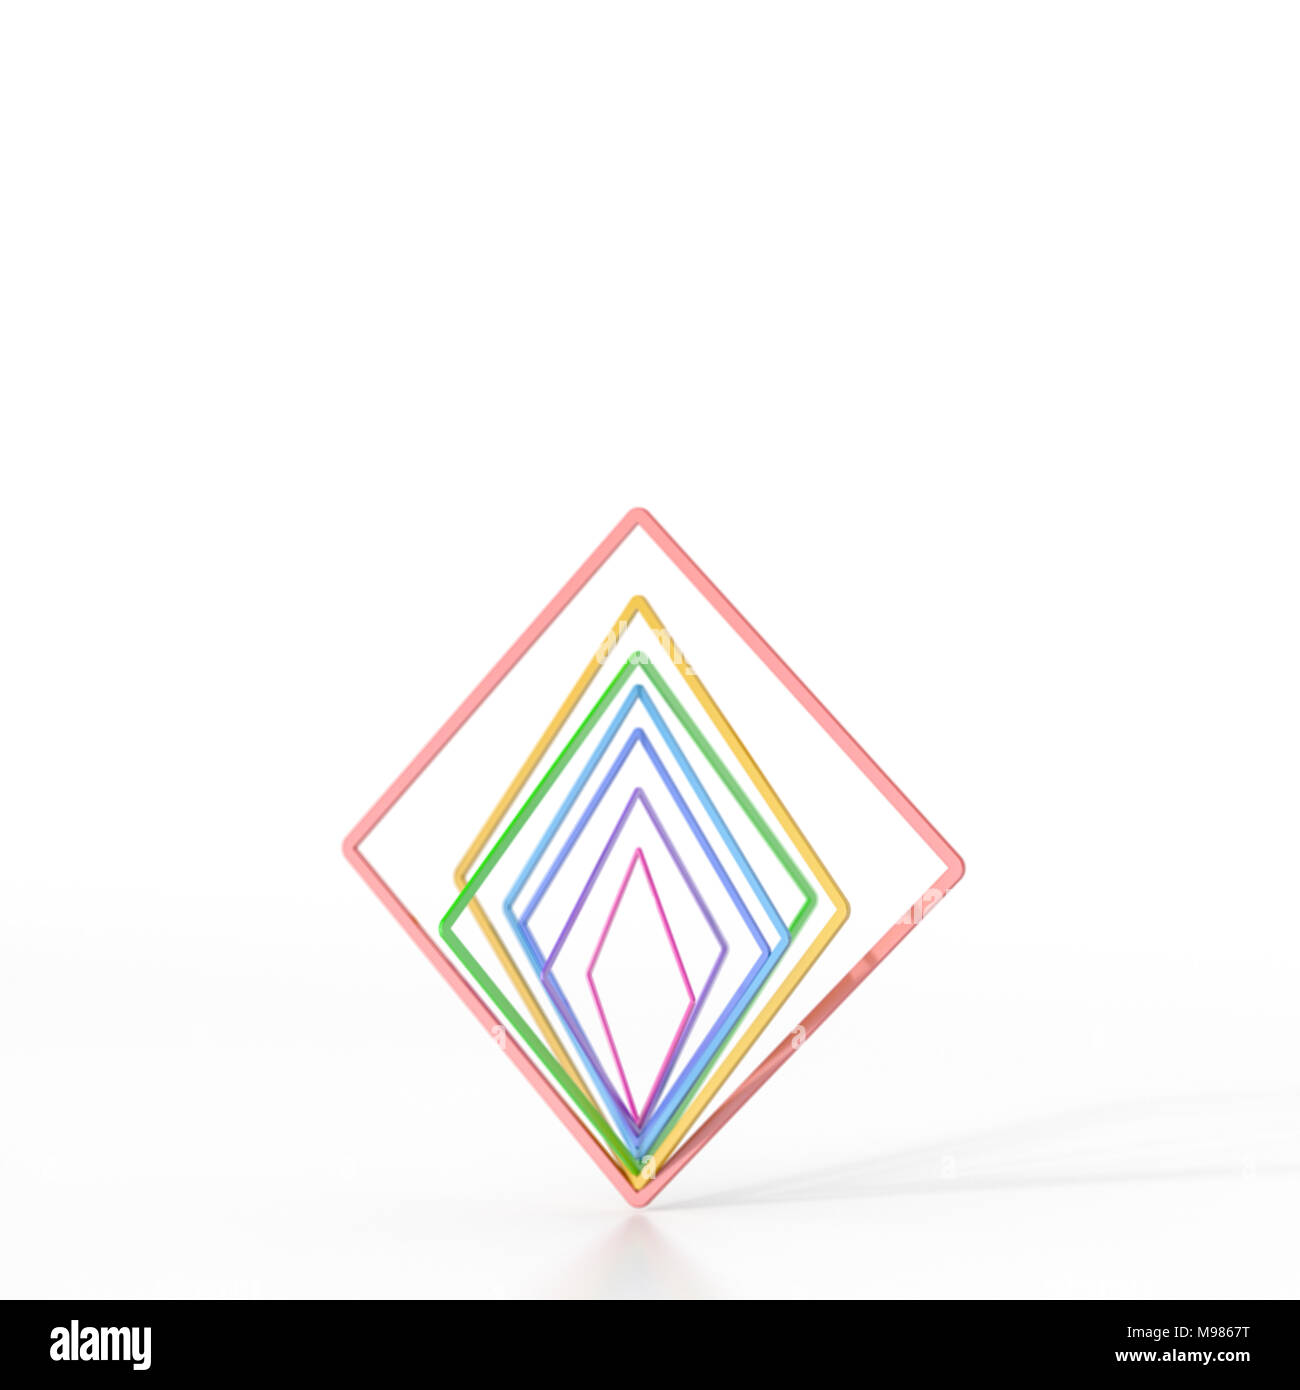 L'équilibrage des carrés colorés abstraits, 3D Rendering Banque D'Images